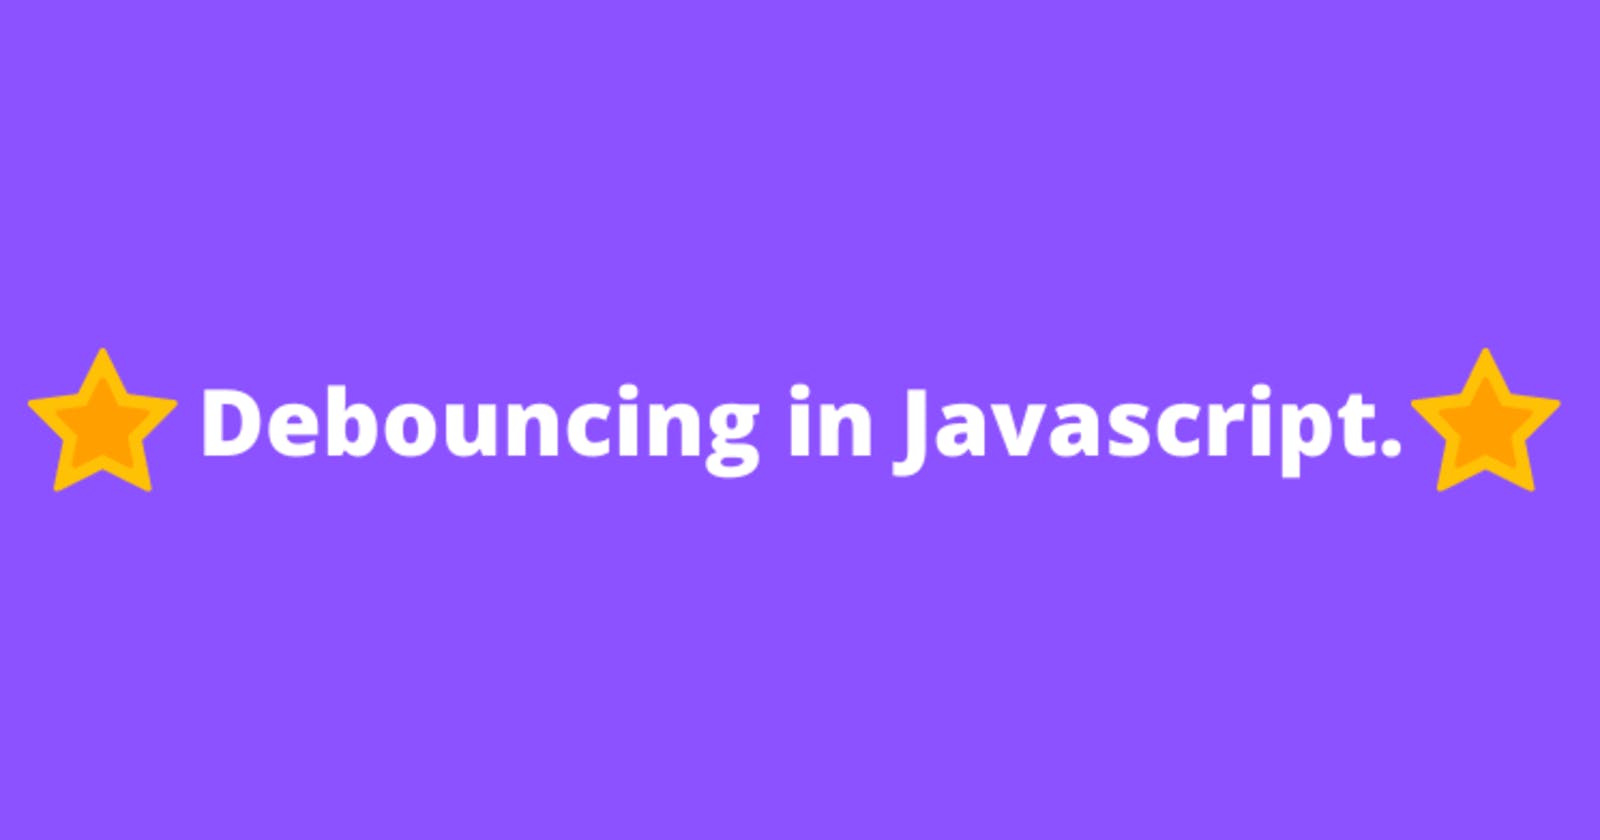 What the heck is Debouncing in JavaScript???